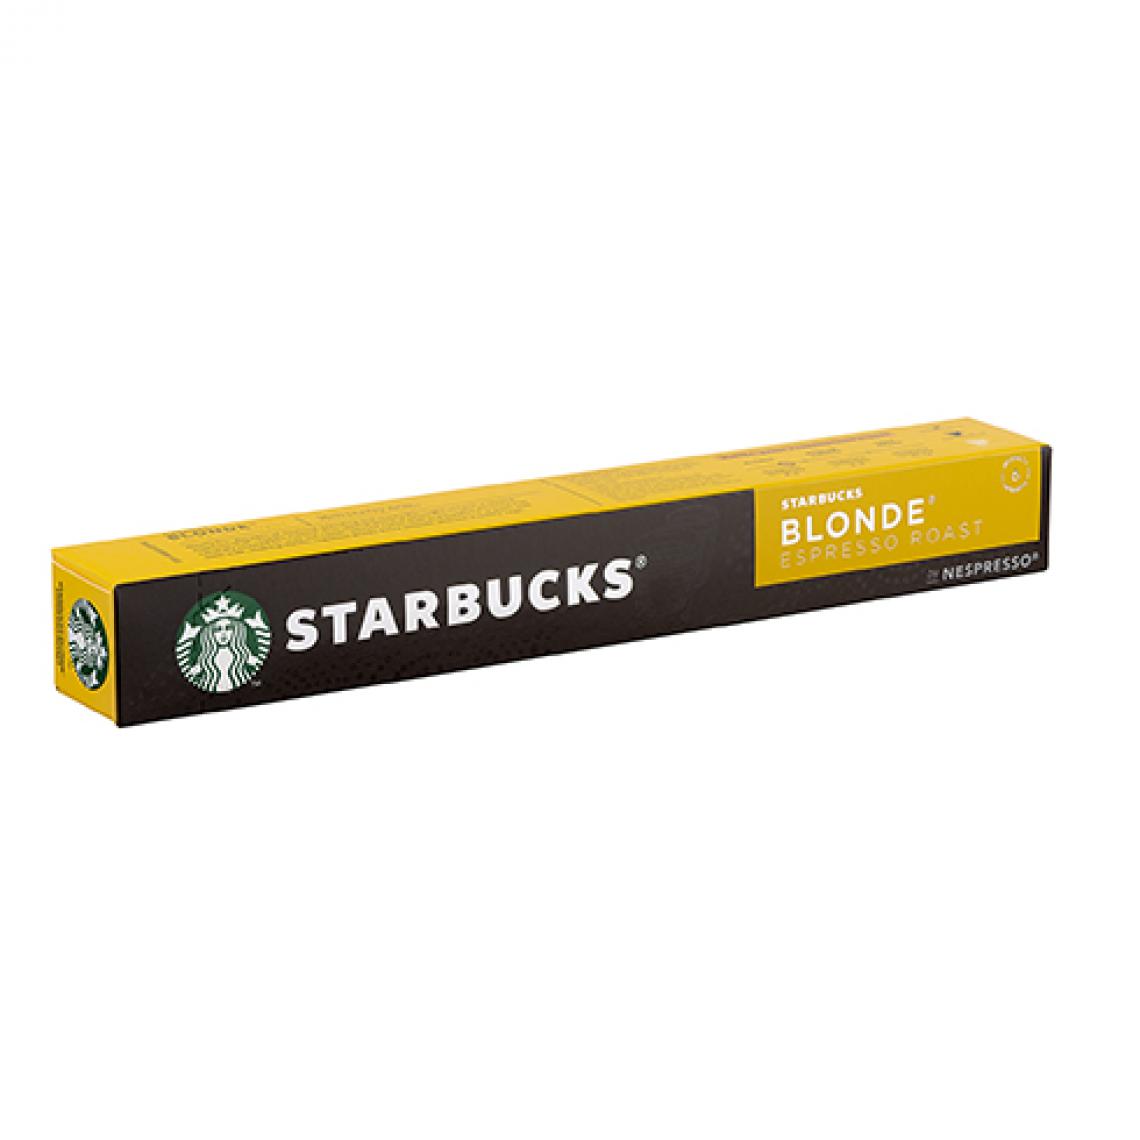 NC - Capsules de café Starbucks Espresso blond - Boîte de 10 - Dosette café